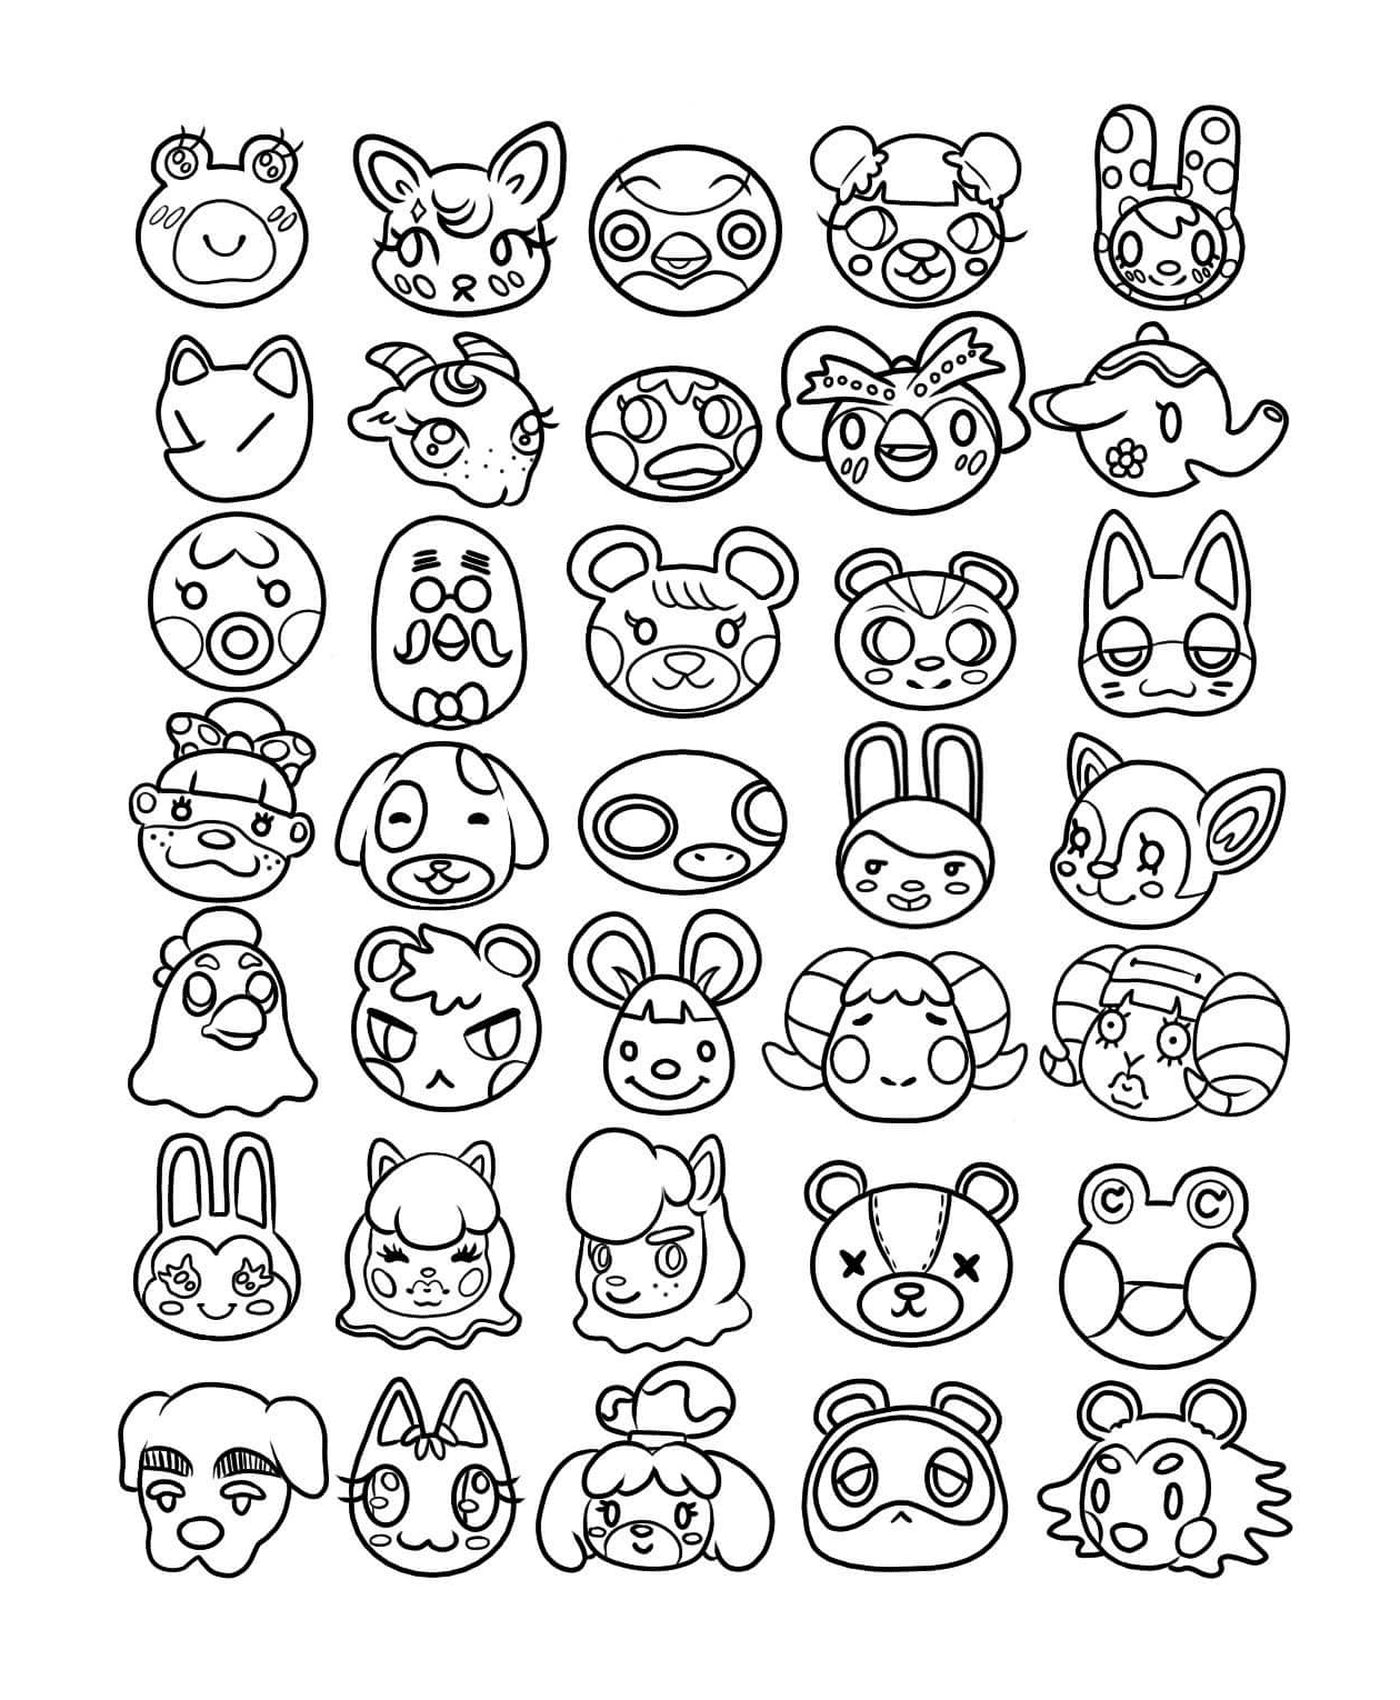   Kawaii, dessin de différentes têtes d'animaux en encre noire 